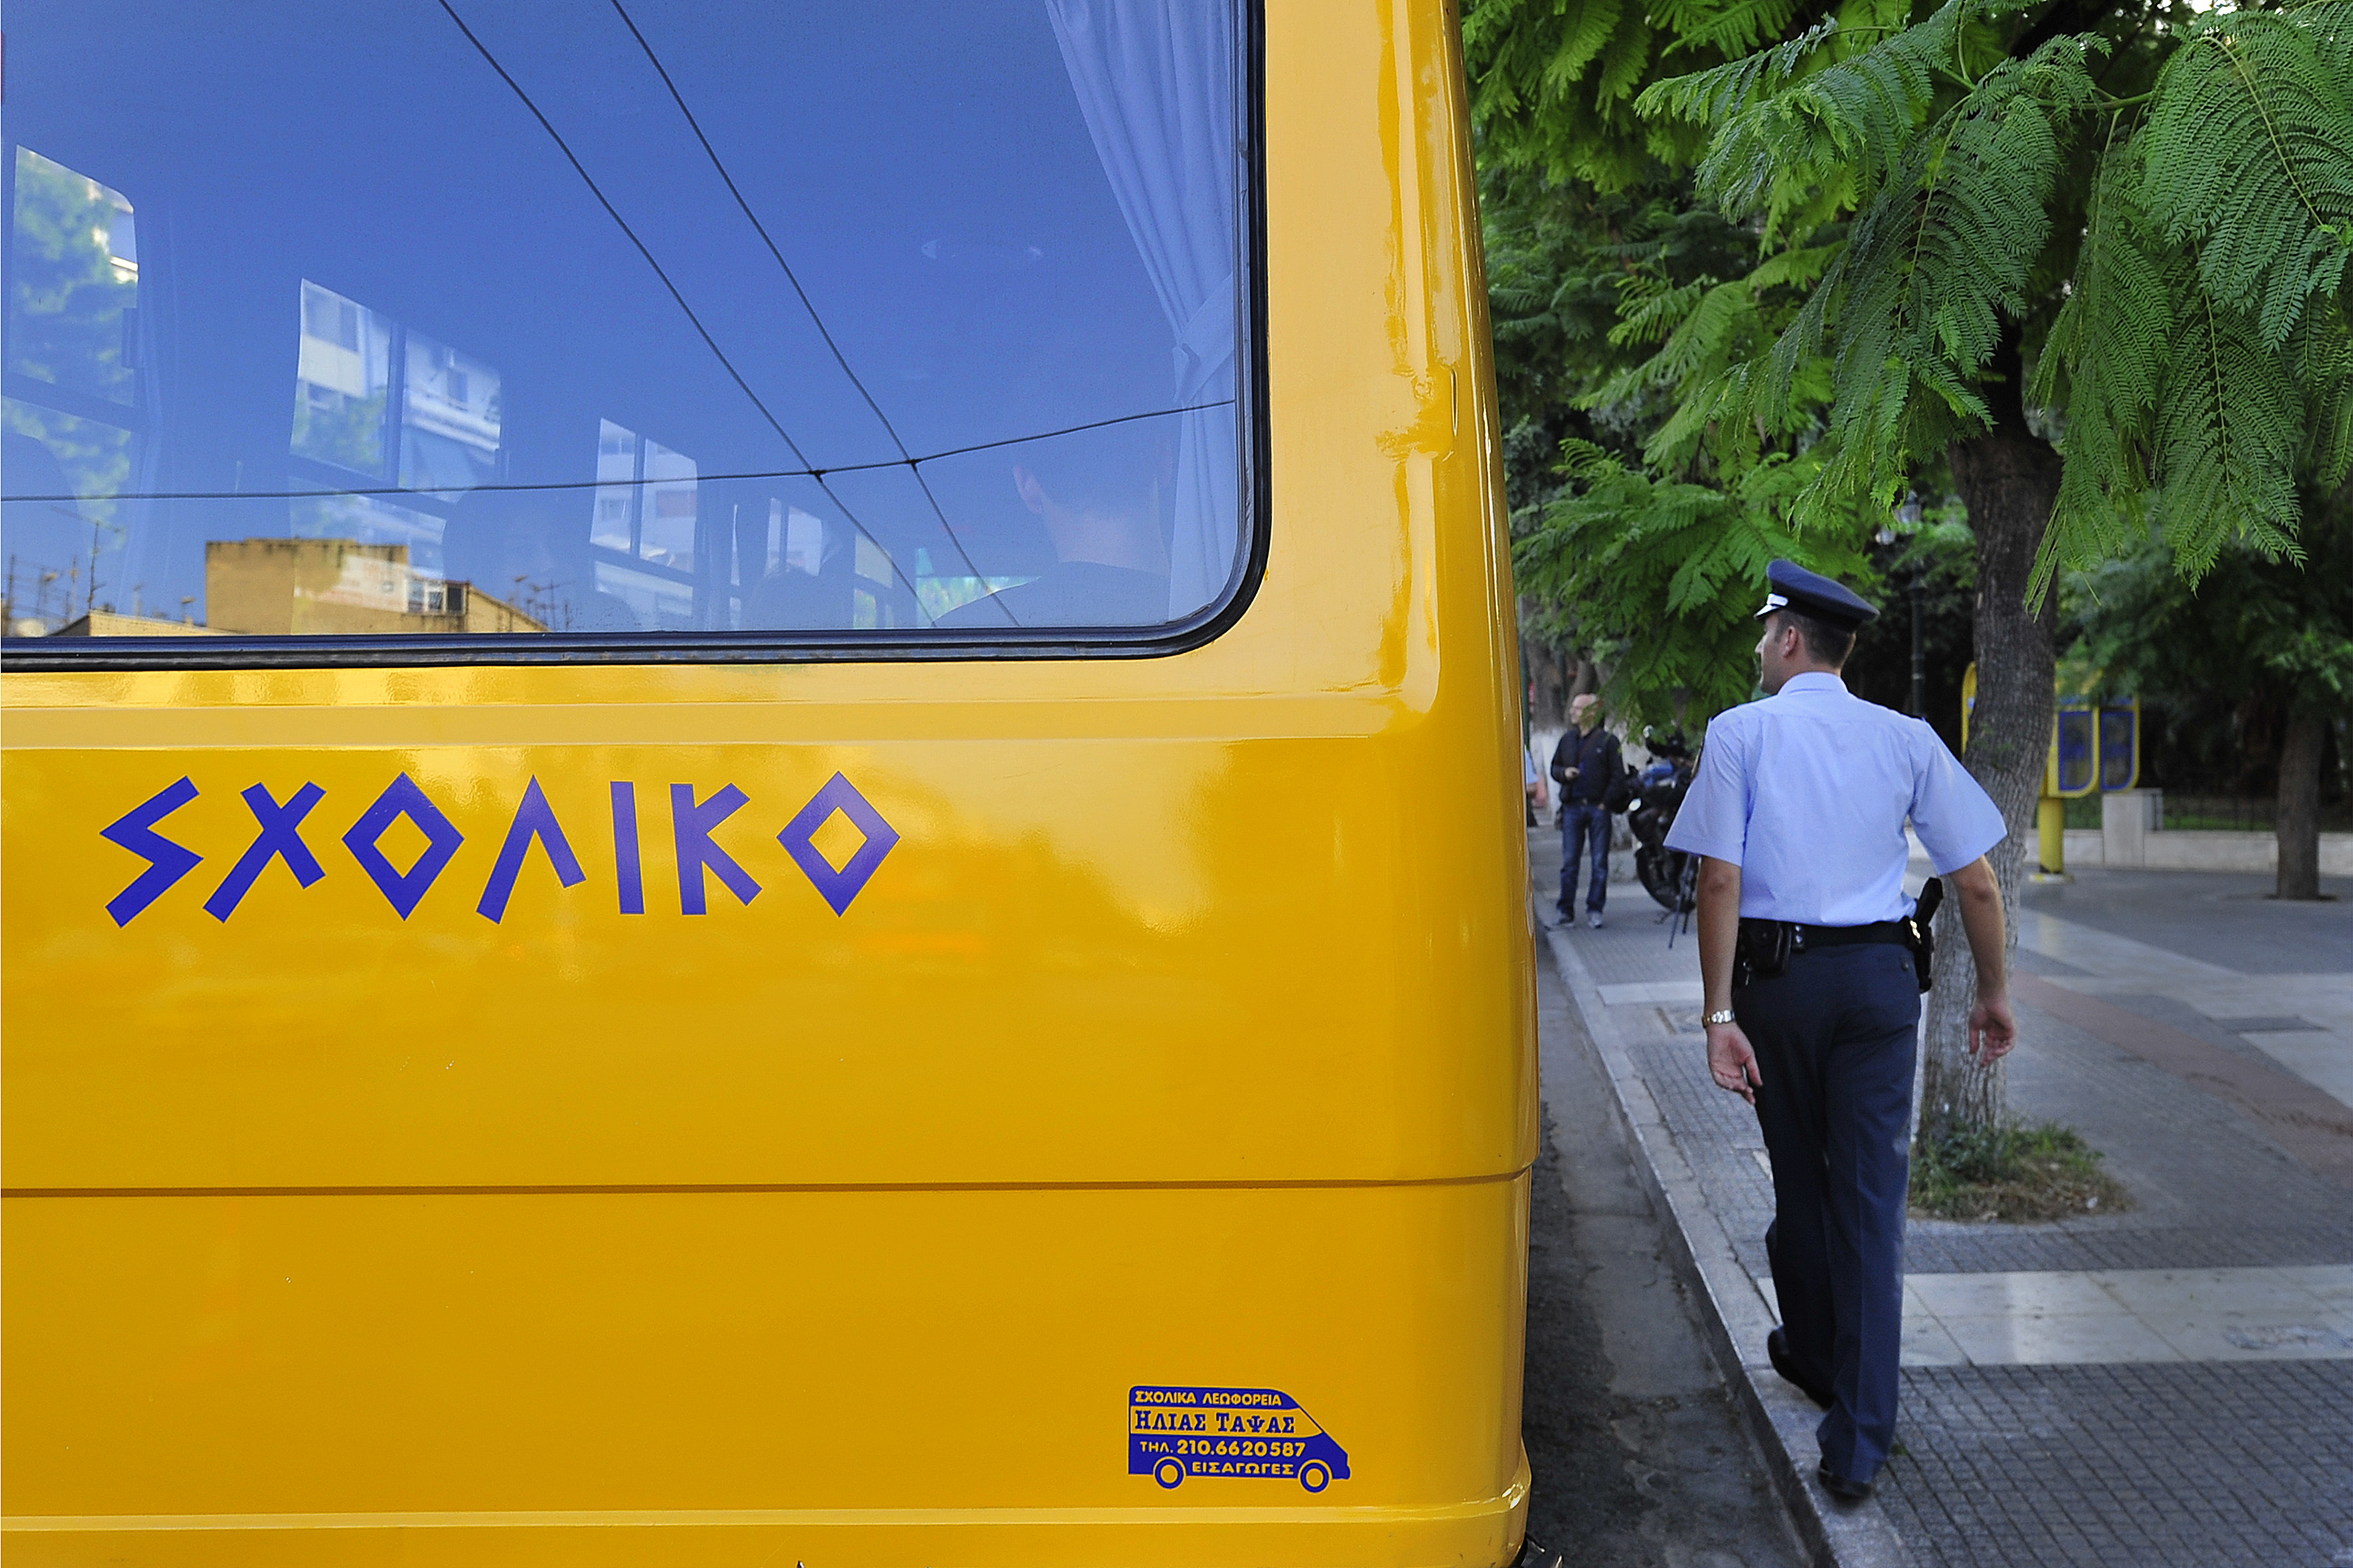 Θεσσαλονίκη: Οι μεταφορείς των σχολικών απέσυραν τις προσφορές